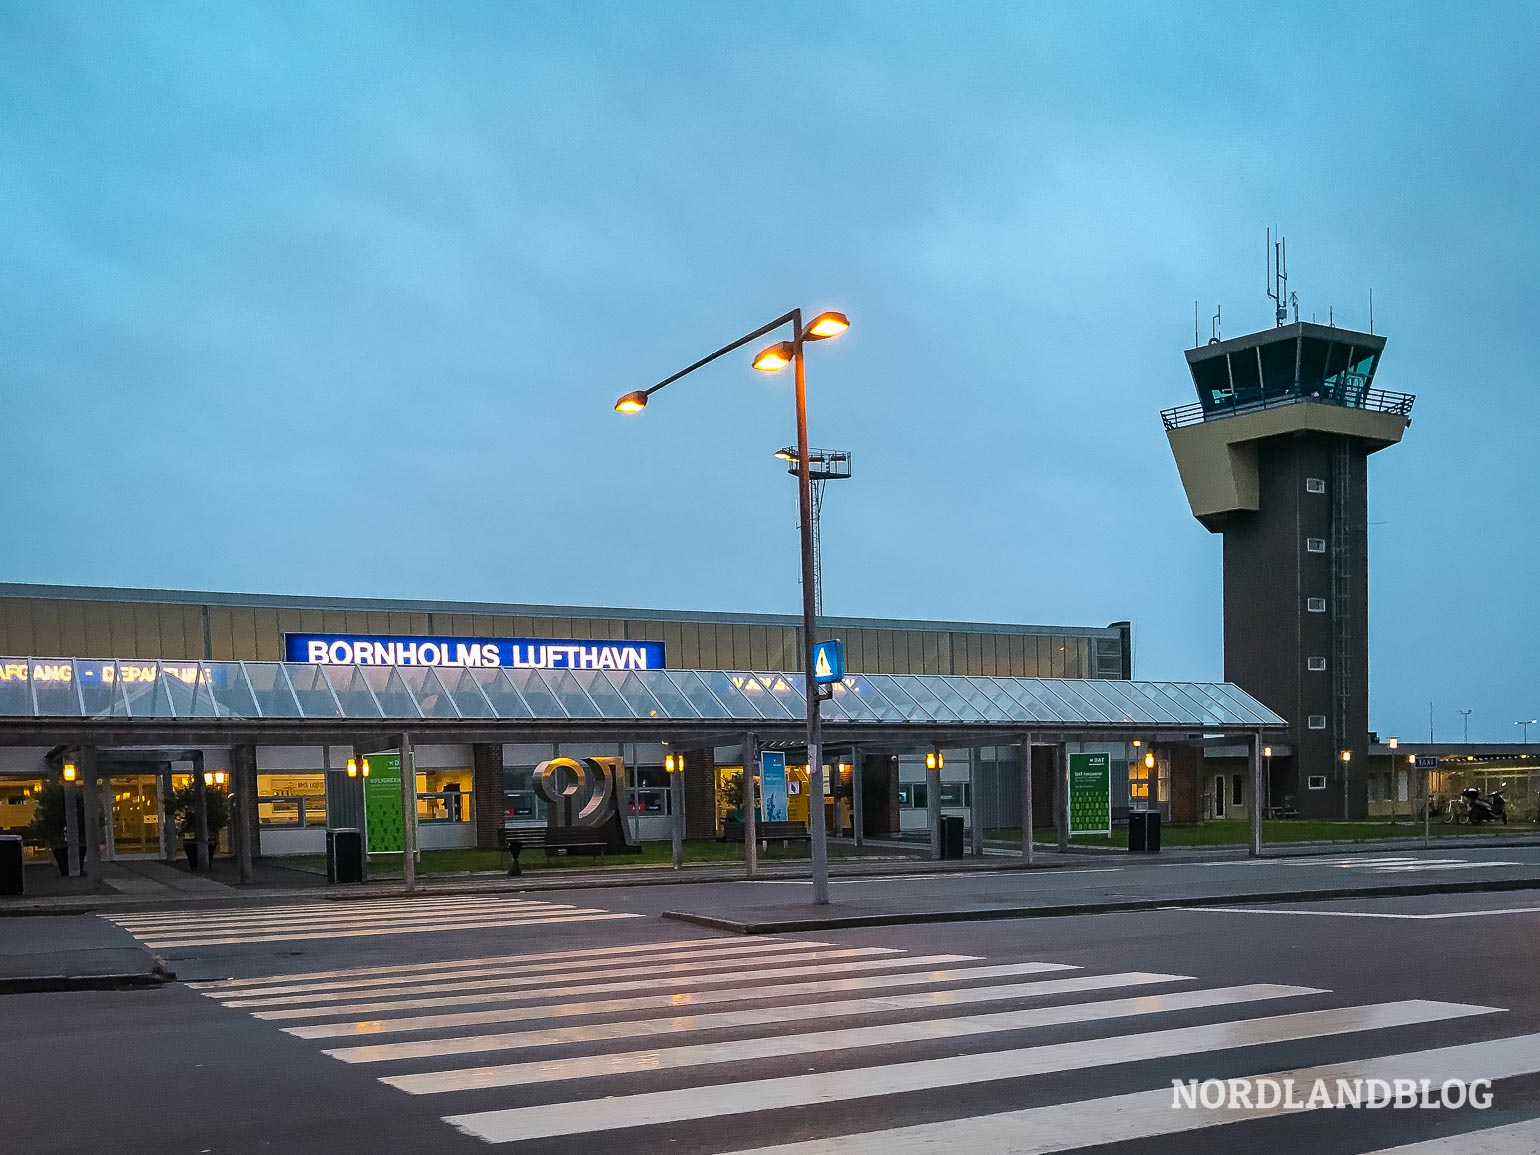 Flughafen auf der dänischen Insel Bornholm - eine Option für die Anreise nach Bornholm